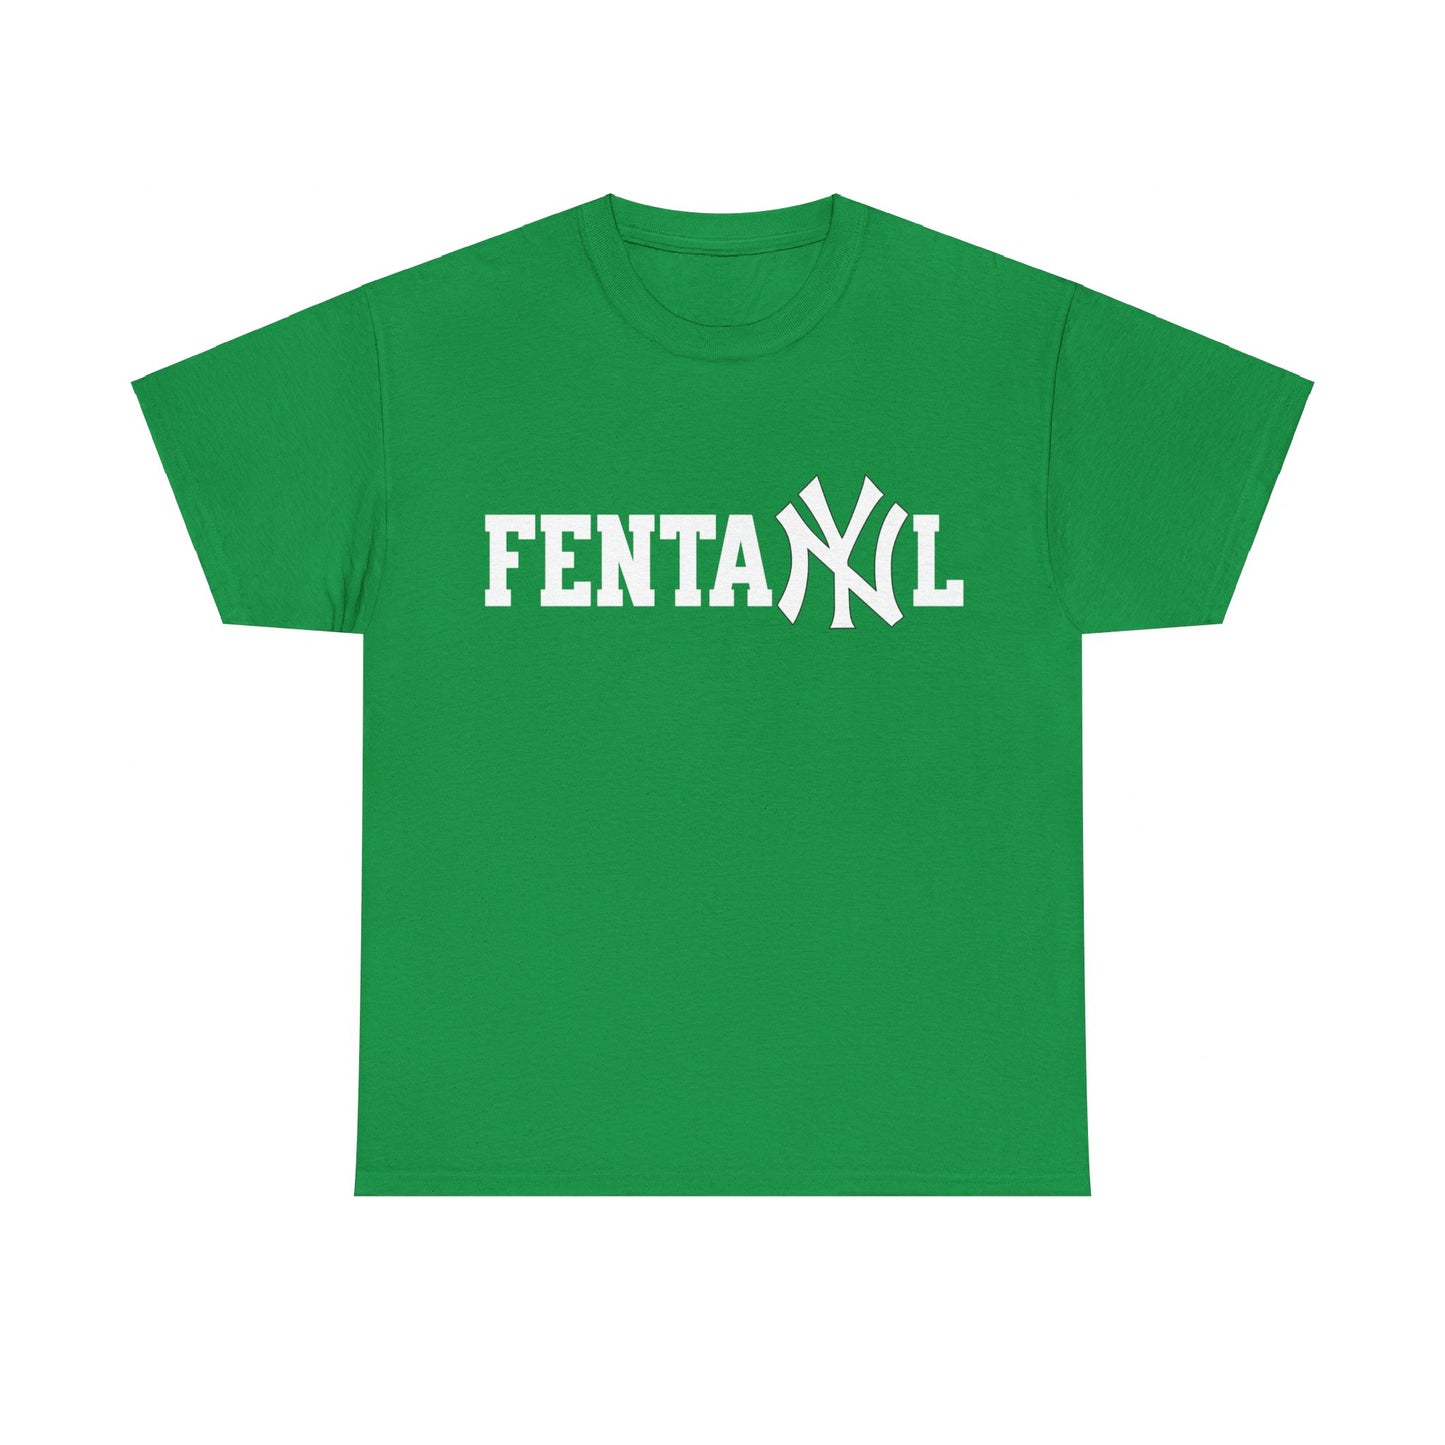 Dieses Shirt mit dem "FentaNYl" Aufdruck im NY Yankees-Stil ist der Hingucker für alle Meme-Fans! Das freche Design spielt auf den Opioid-Skandal an und sorgt garantiert für Aufmerksamkeit. Trage es zu Baseball-Games oder im Streetstyle. Perfektes Geschenk für New York Fans und Teenager